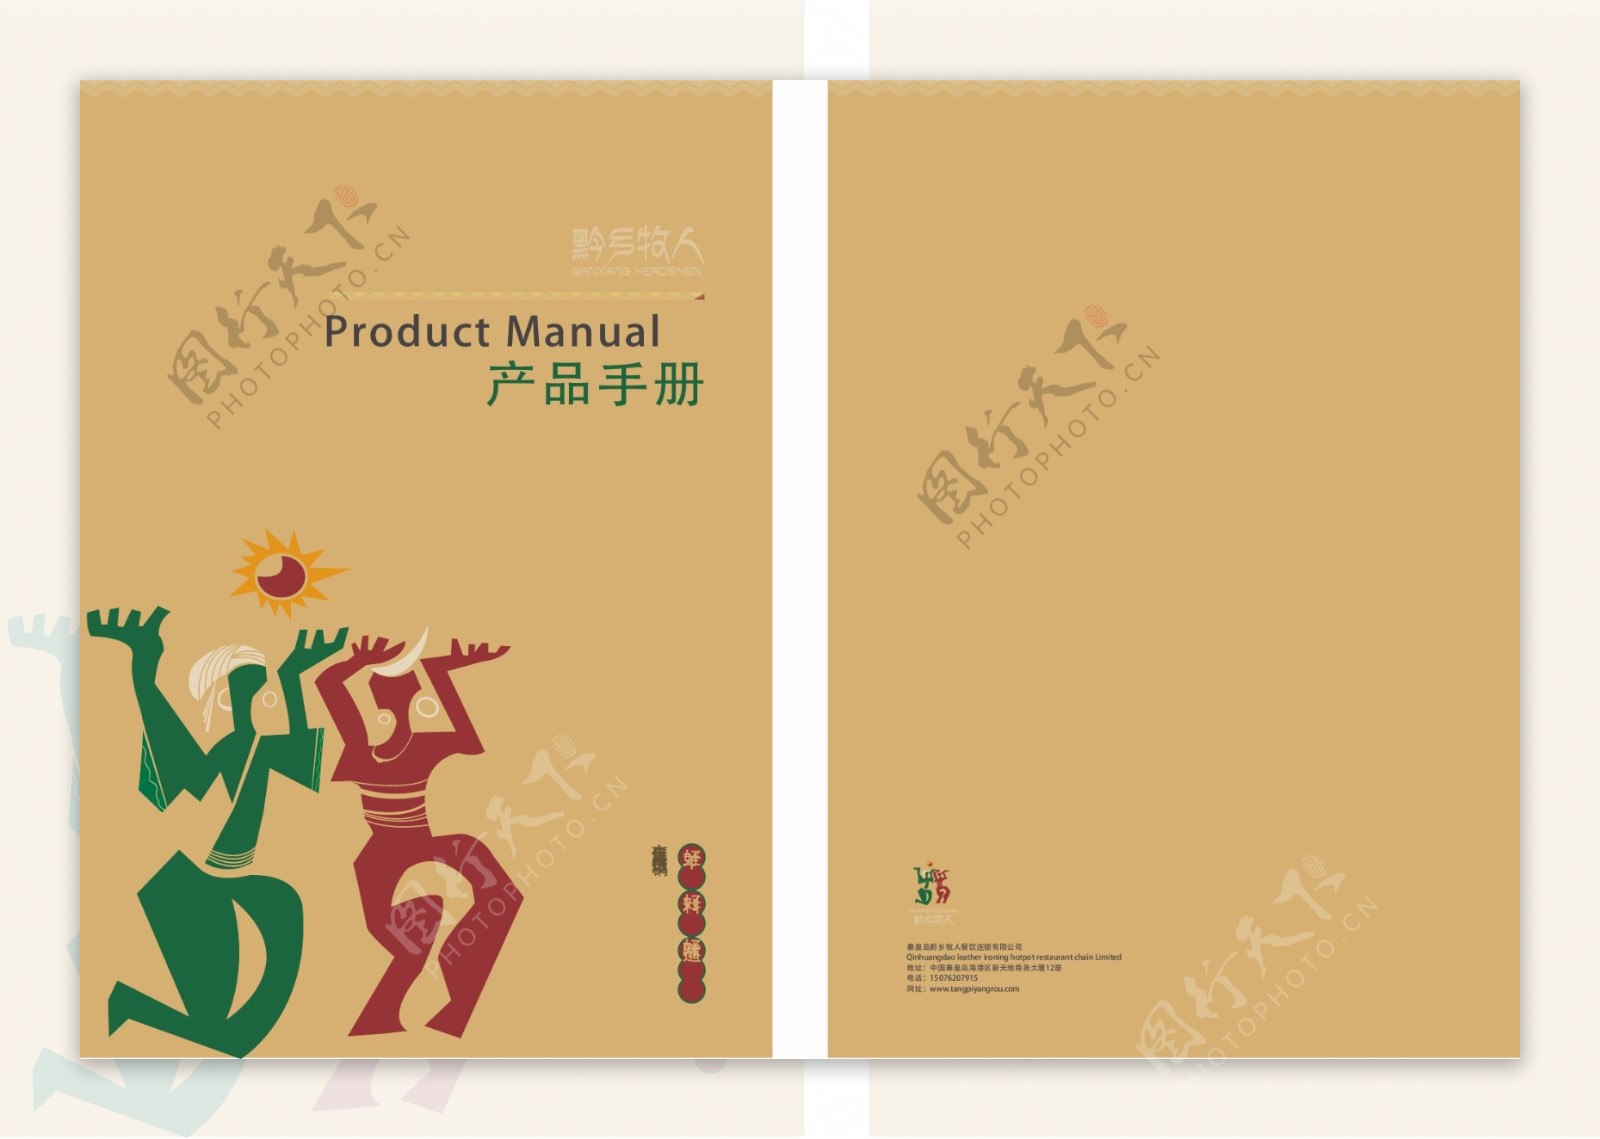 黔乡牧人产品手册封面图片